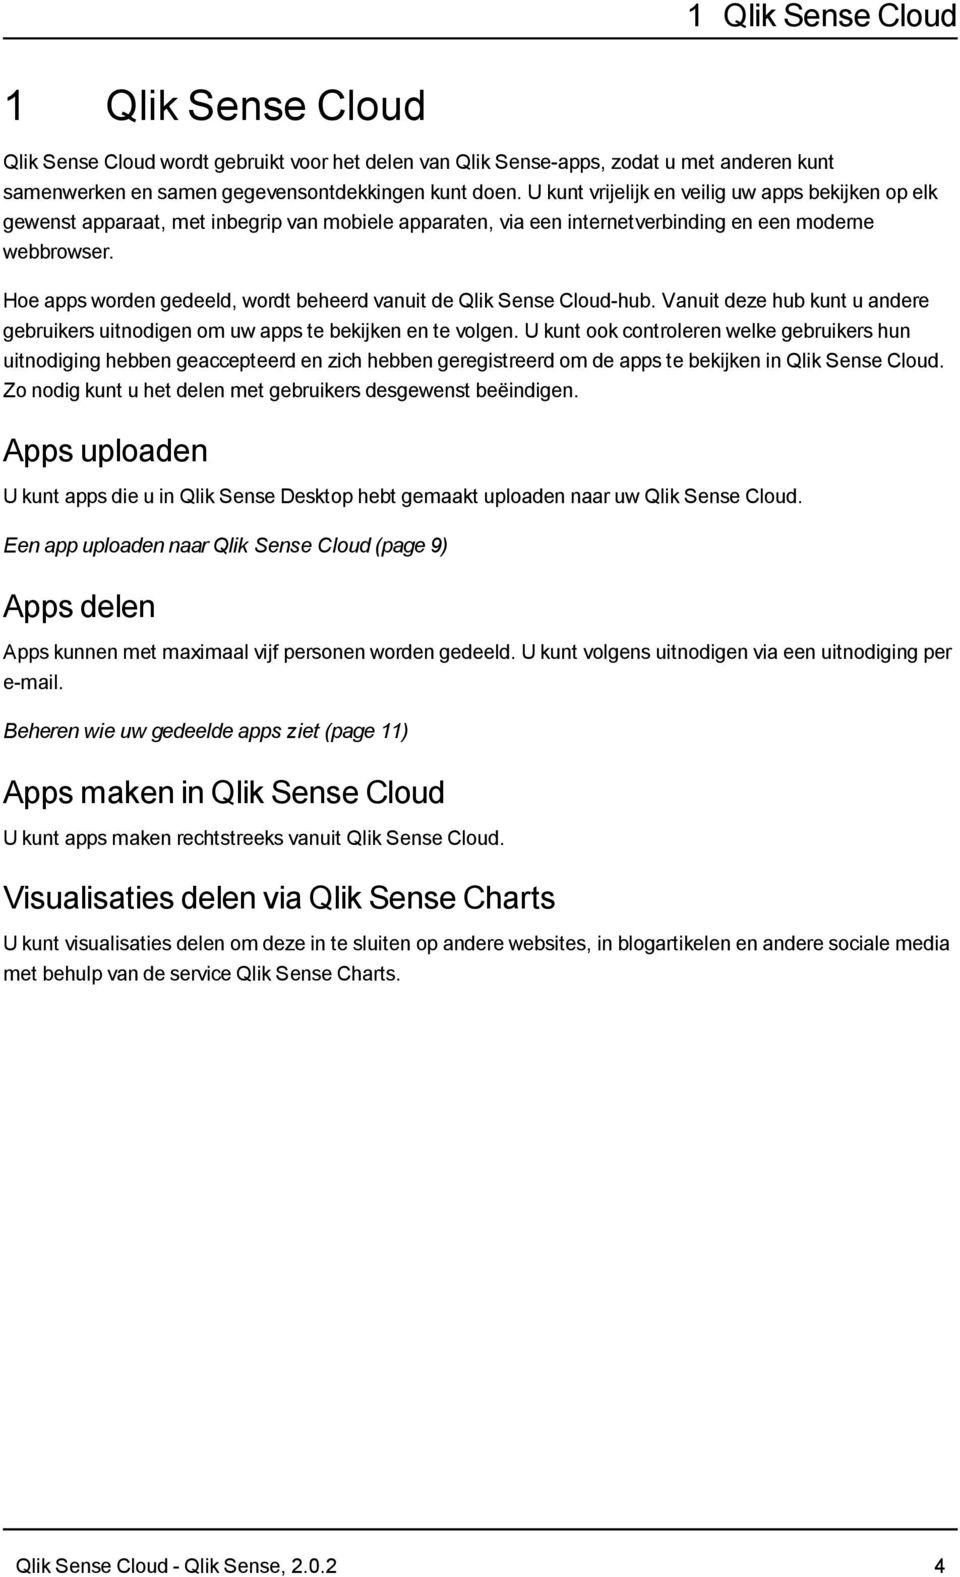 Hoe apps worden gedeeld, wordt beheerd vanuit de Qlik Sense Cloud-hub. Vanuit deze hub kunt u andere gebruikers uitnodigen om uw apps te bekijken en te volgen.